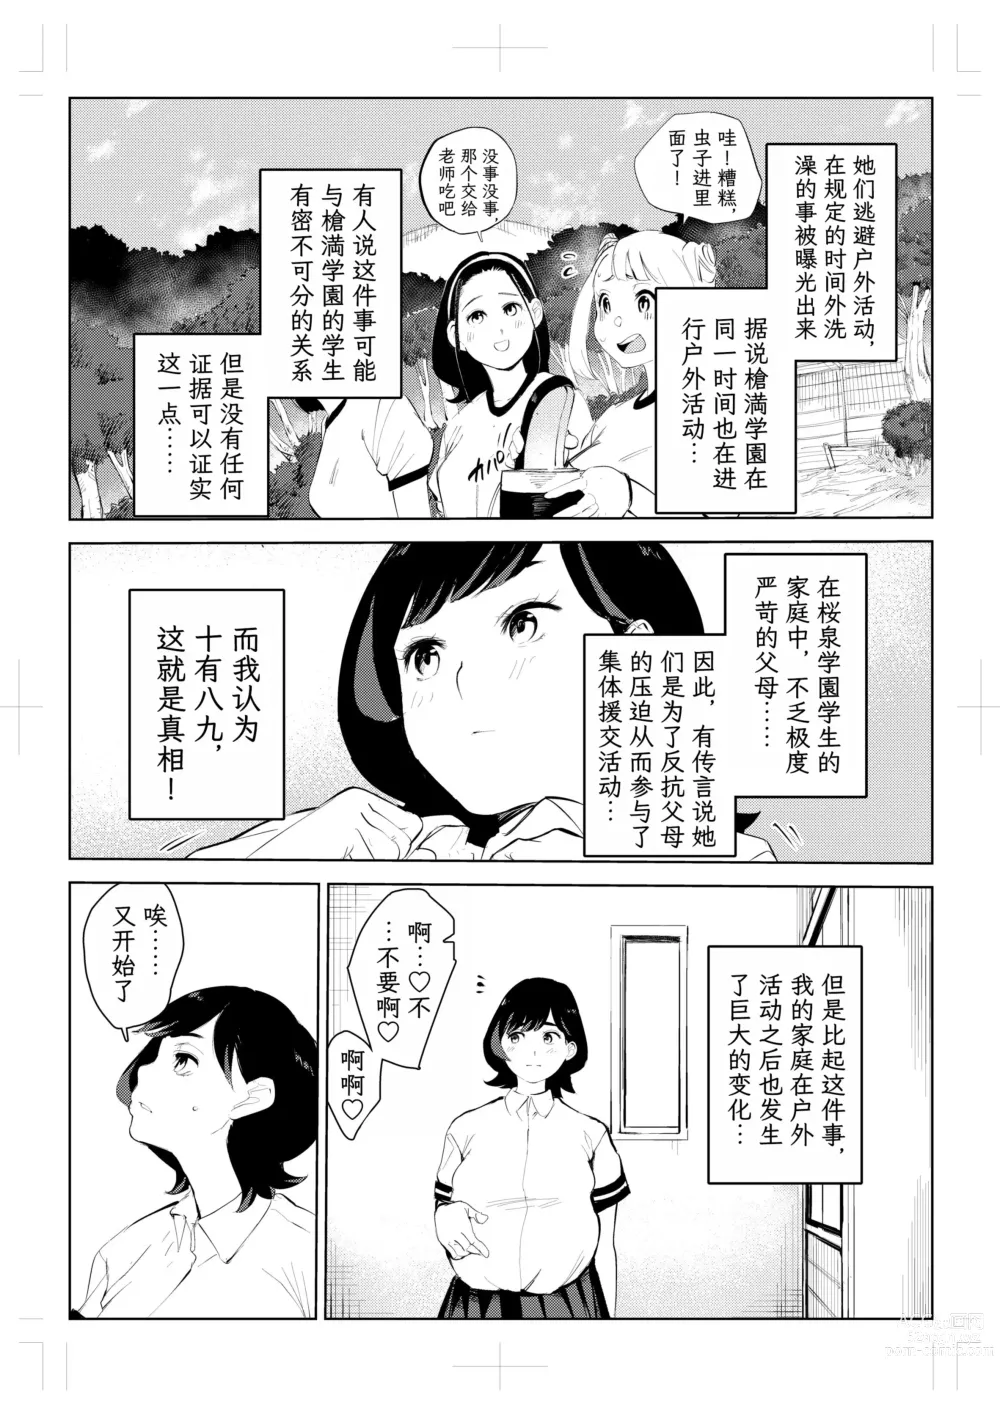 Page 82 of doujinshi 40-sai no Mahoutsukai 4